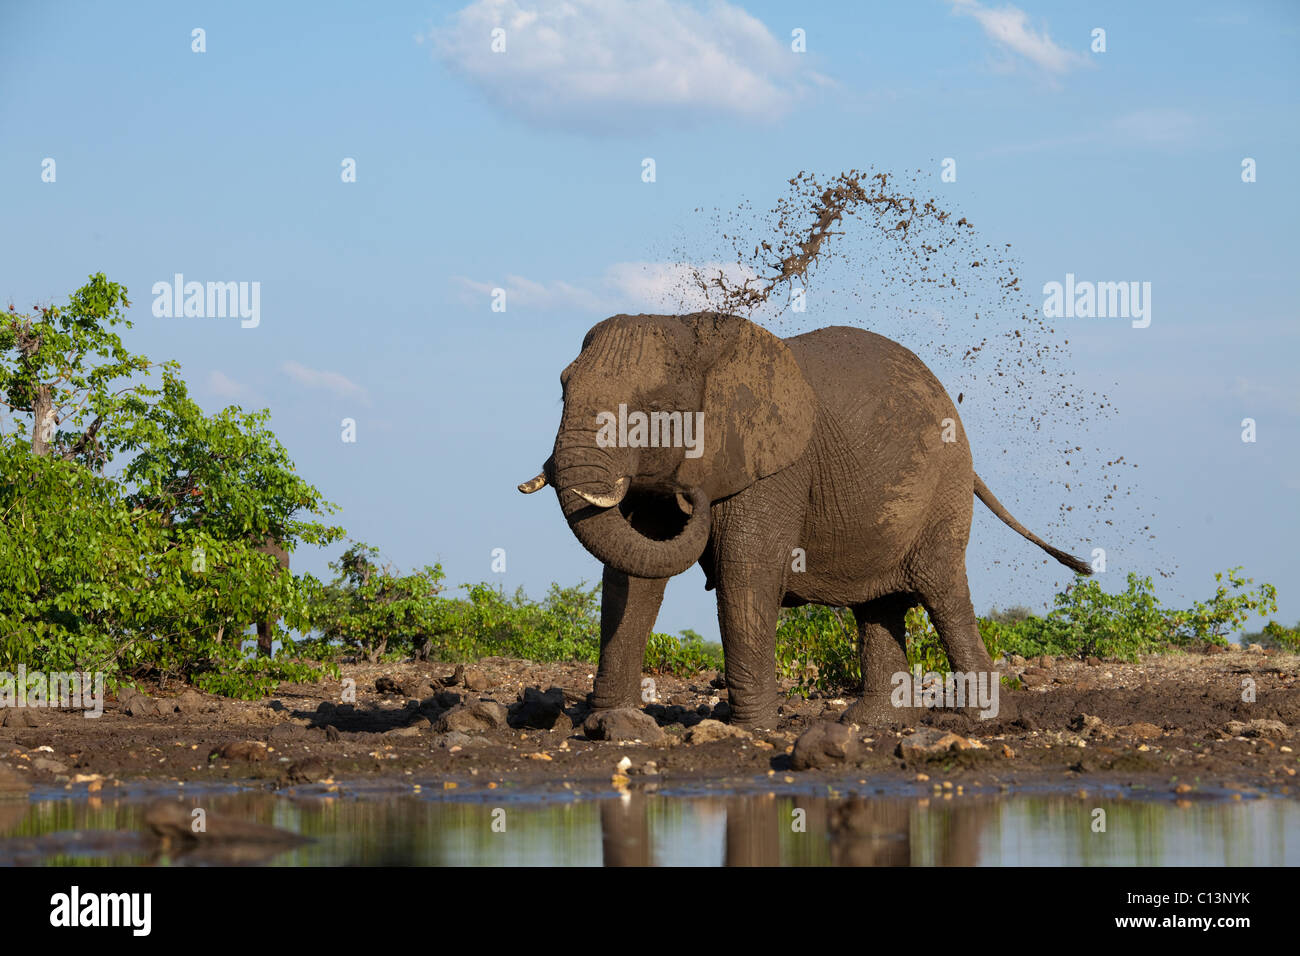 African Elephant (Loxodonta africana). Elephant waterhole mudsplash. Stock Photo